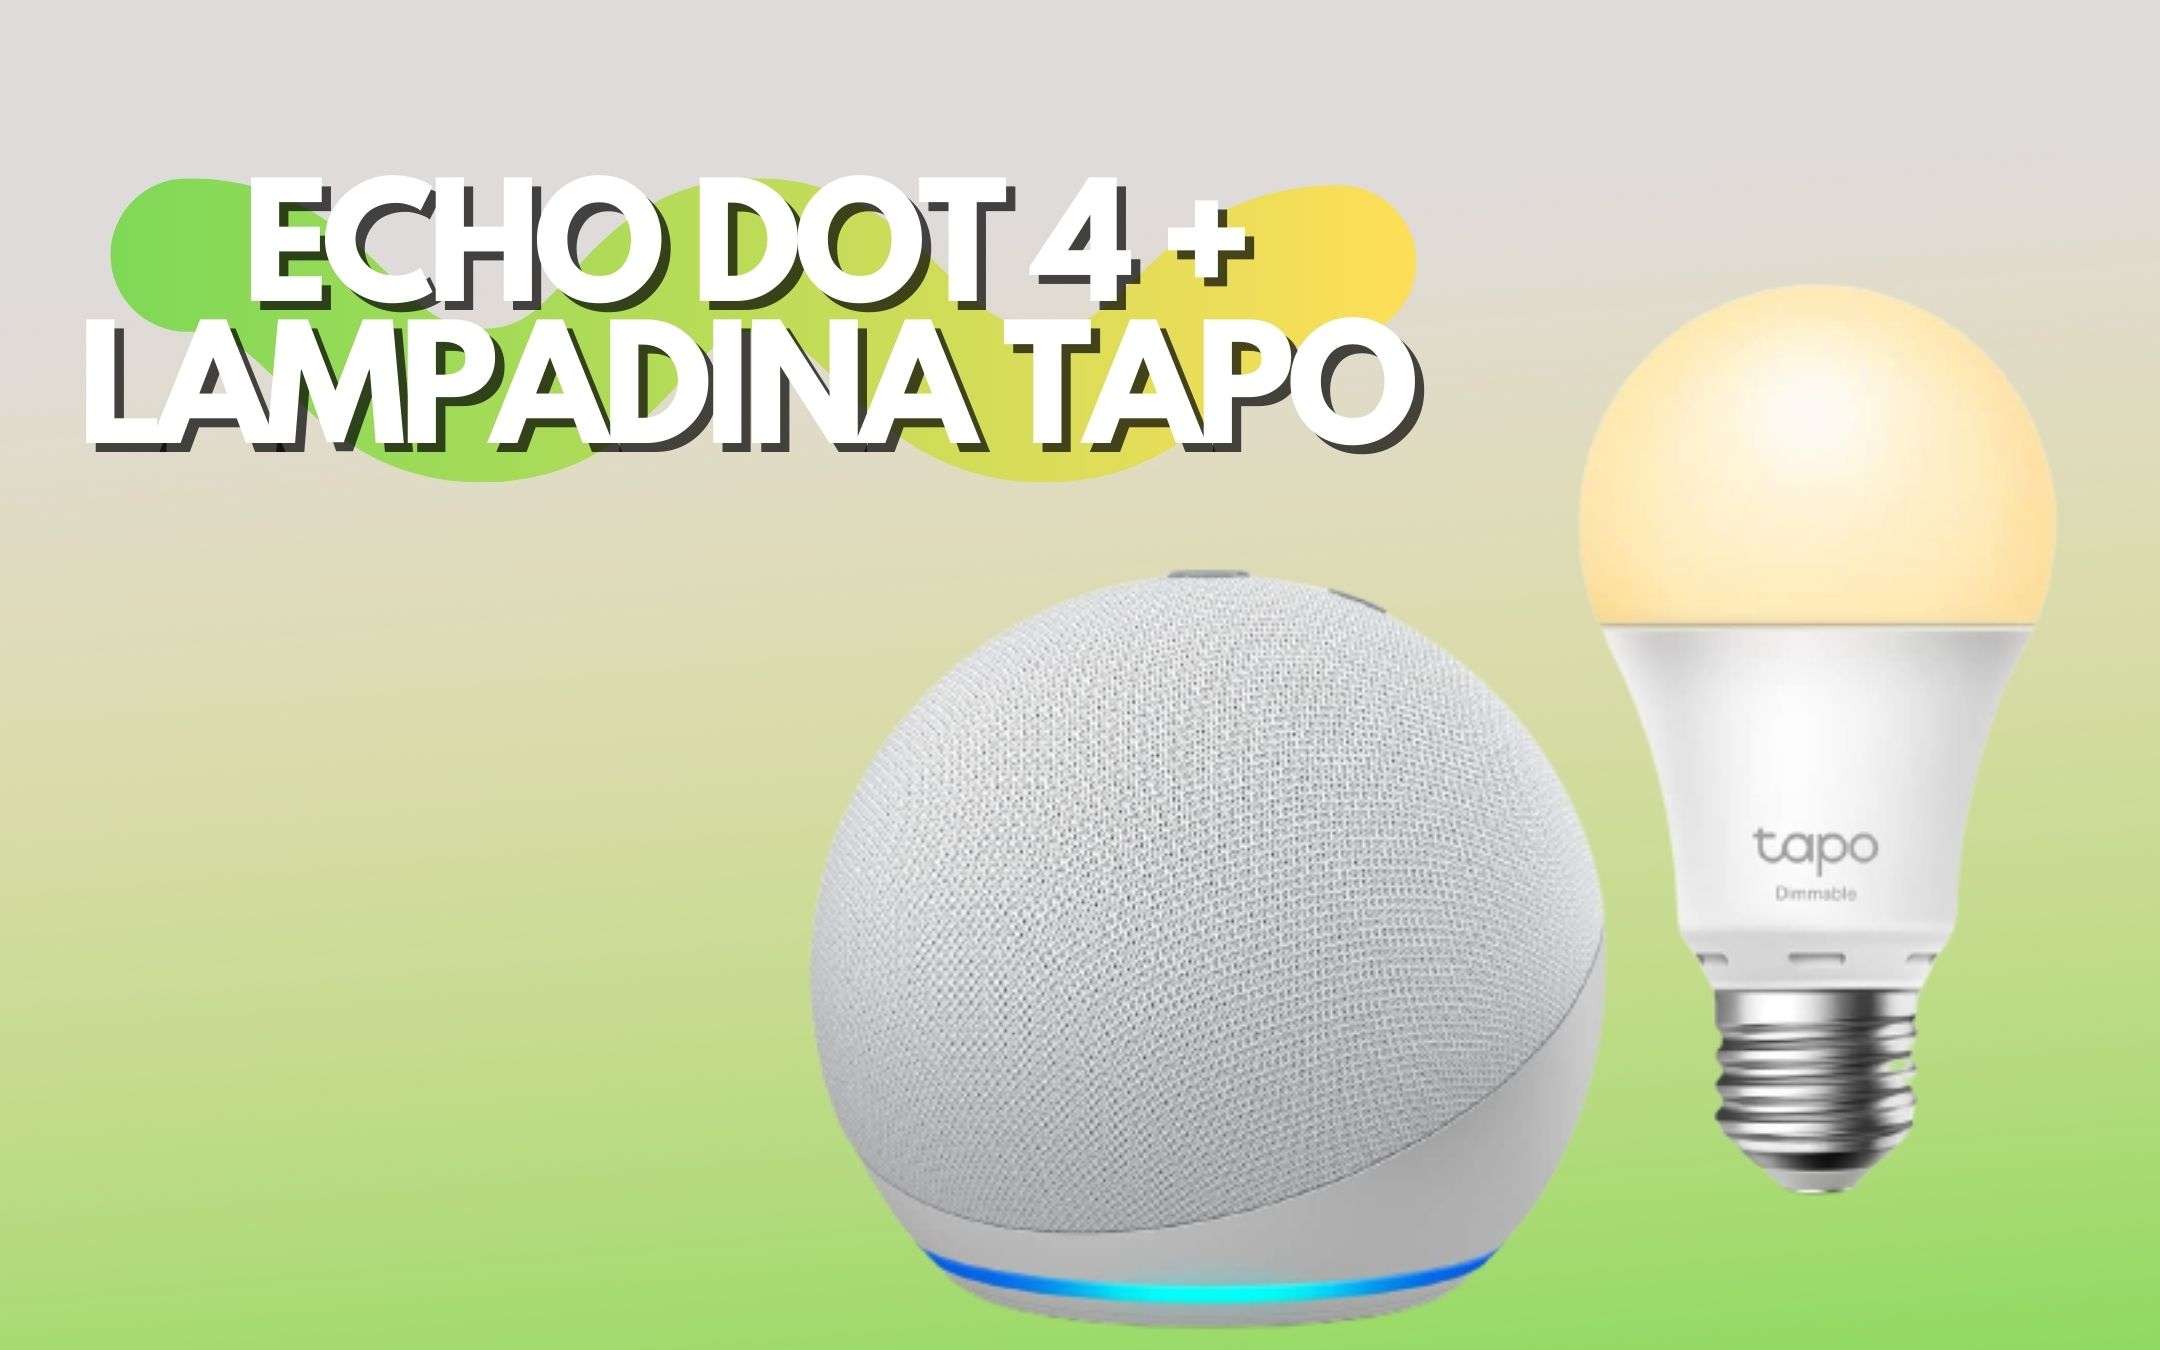 Echo Dot in vendita a prezzo BOMBA con lampadina Tapo